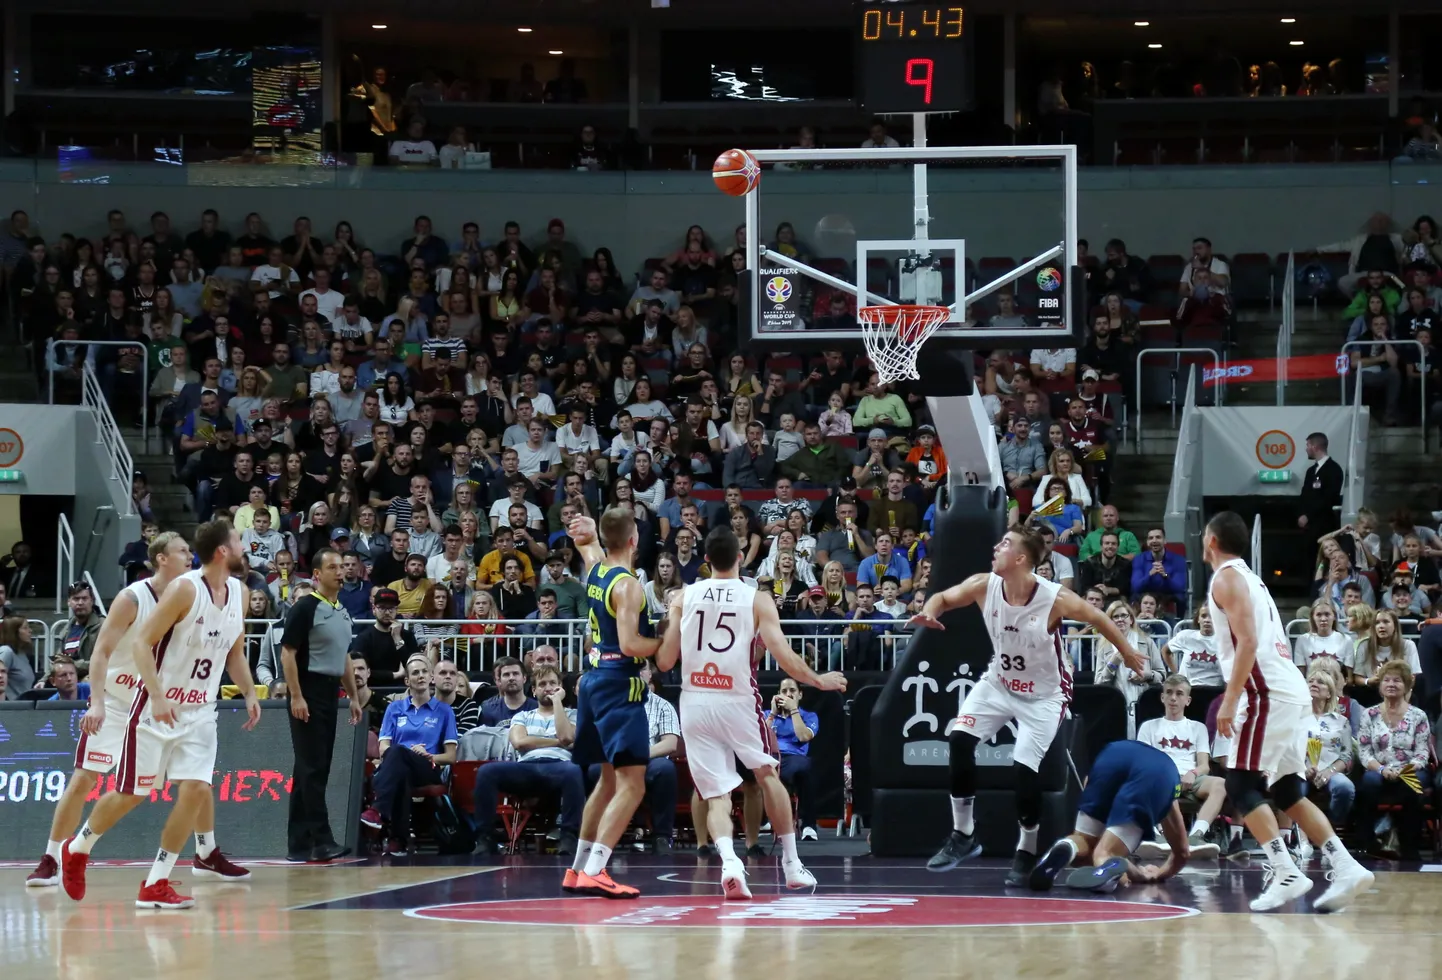 Pasaules kausa izcīņas kvalifikācijas spēle basketbolā starp Latvijas un Slovēnijas valstsvenībām "Arēna Rīga".